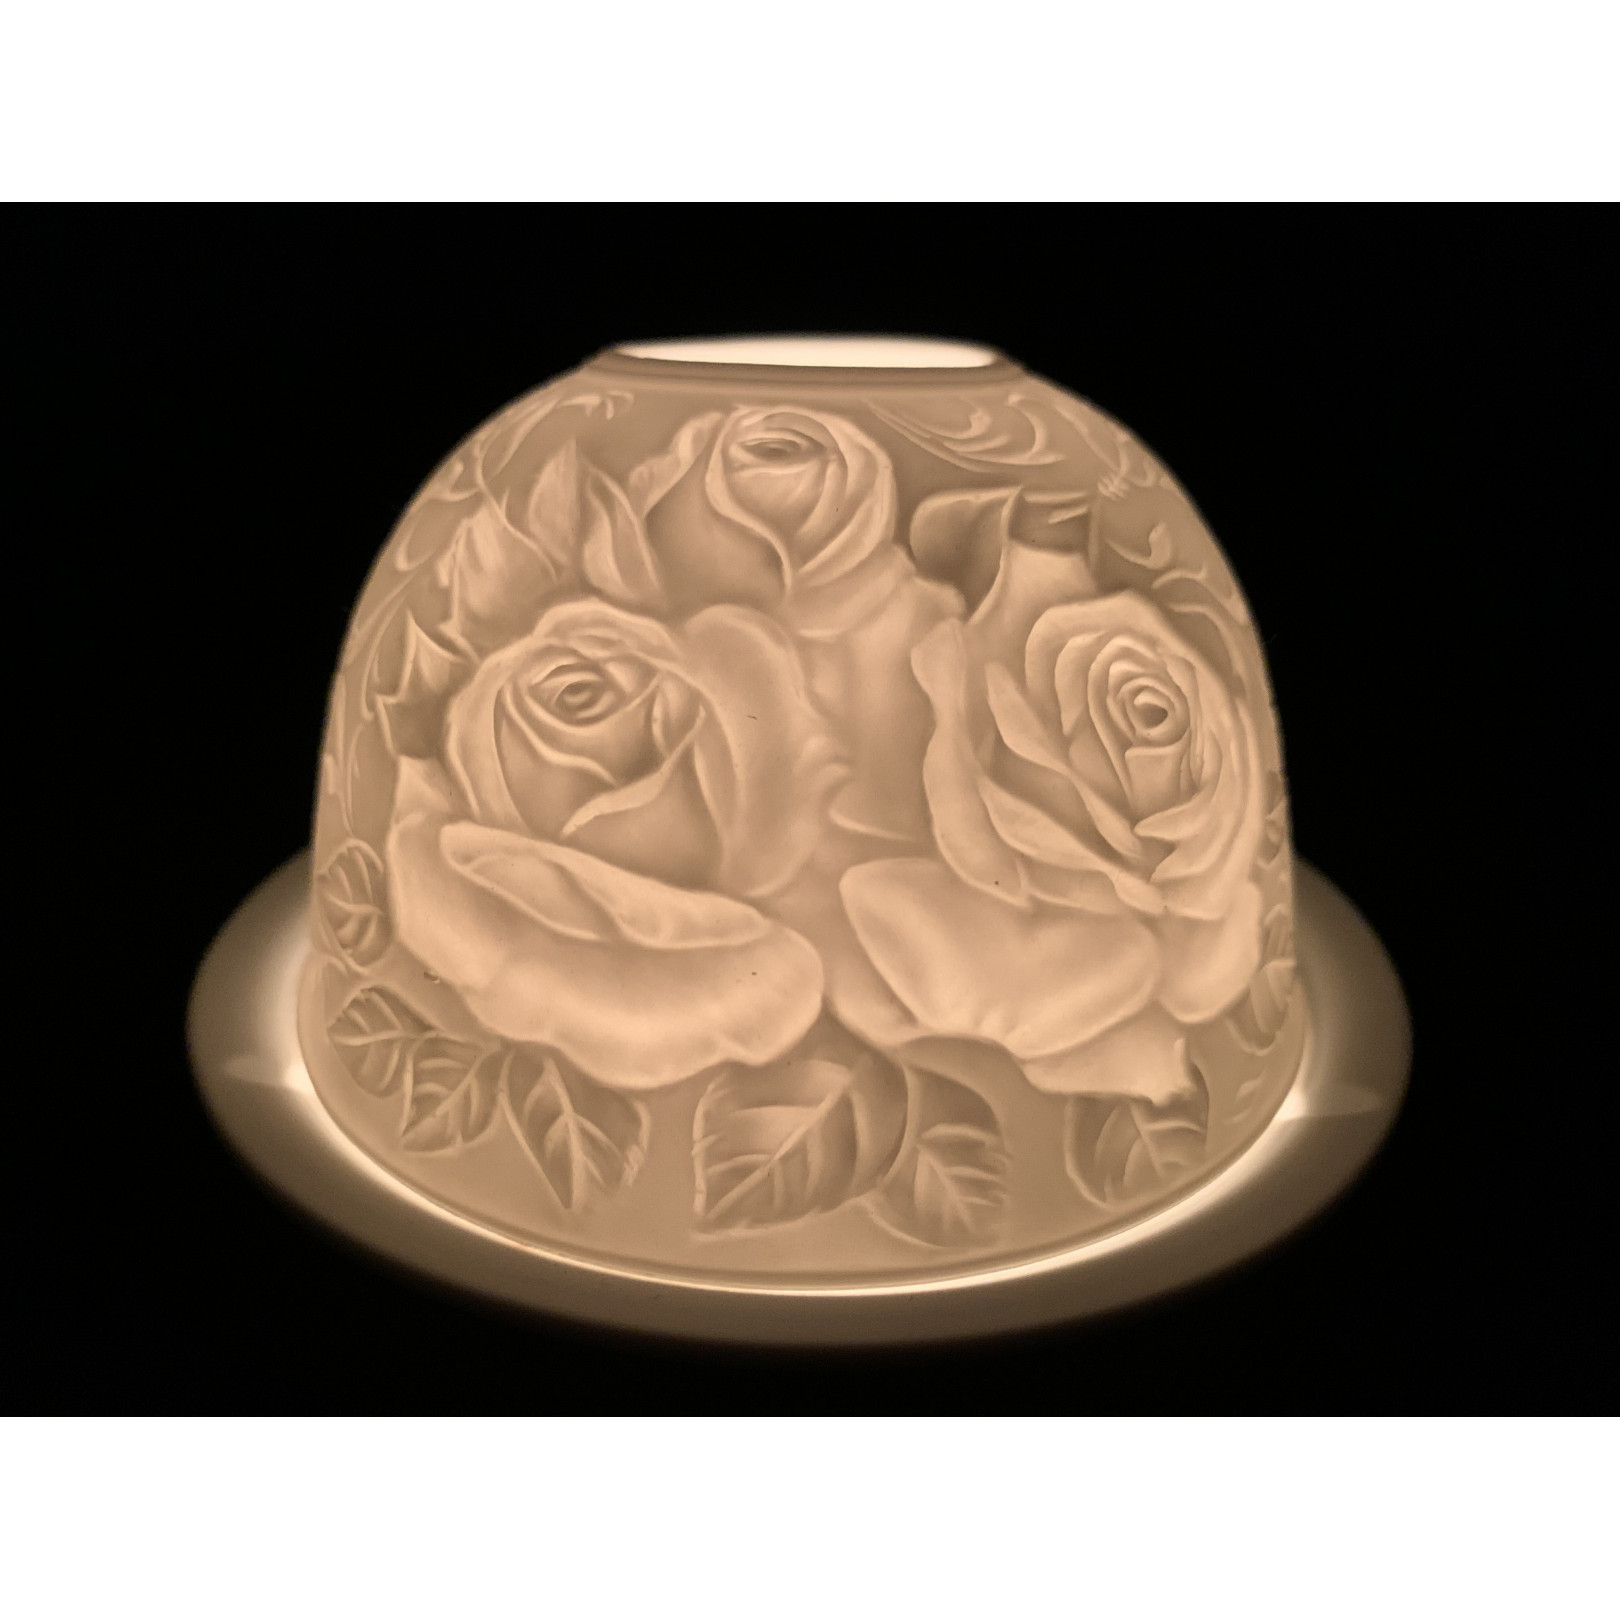 Lampion porcelanowy- Róże